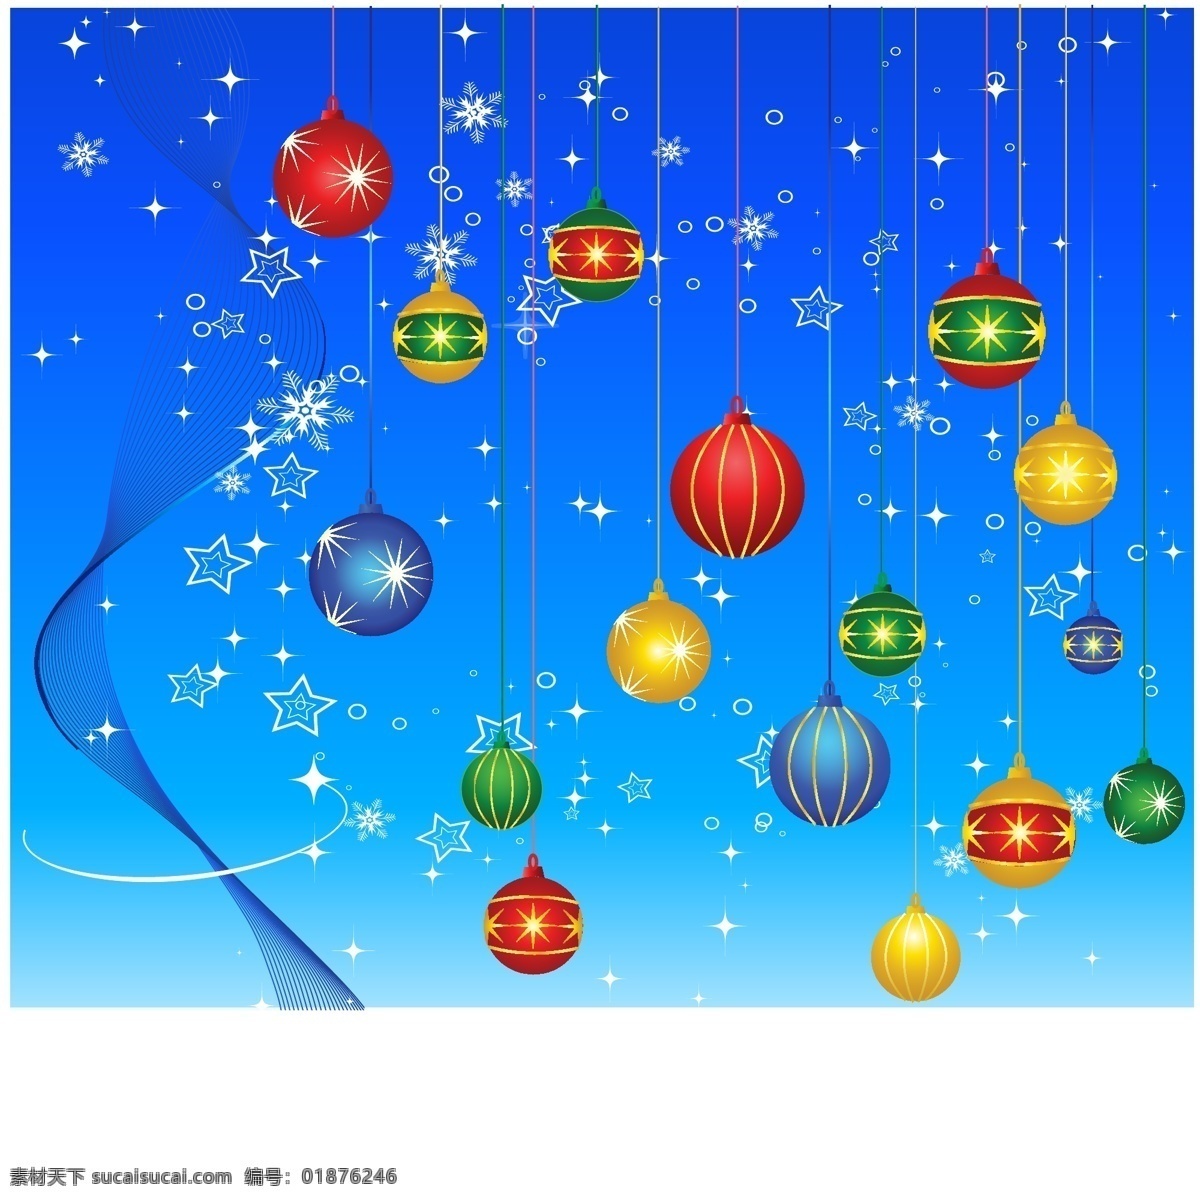 圣诞 礼物 彩条 灯 节日素材 蓝底 气球 圣诞节 圣诞礼物 雪 圆球 矢量 装饰素材 灯饰素材